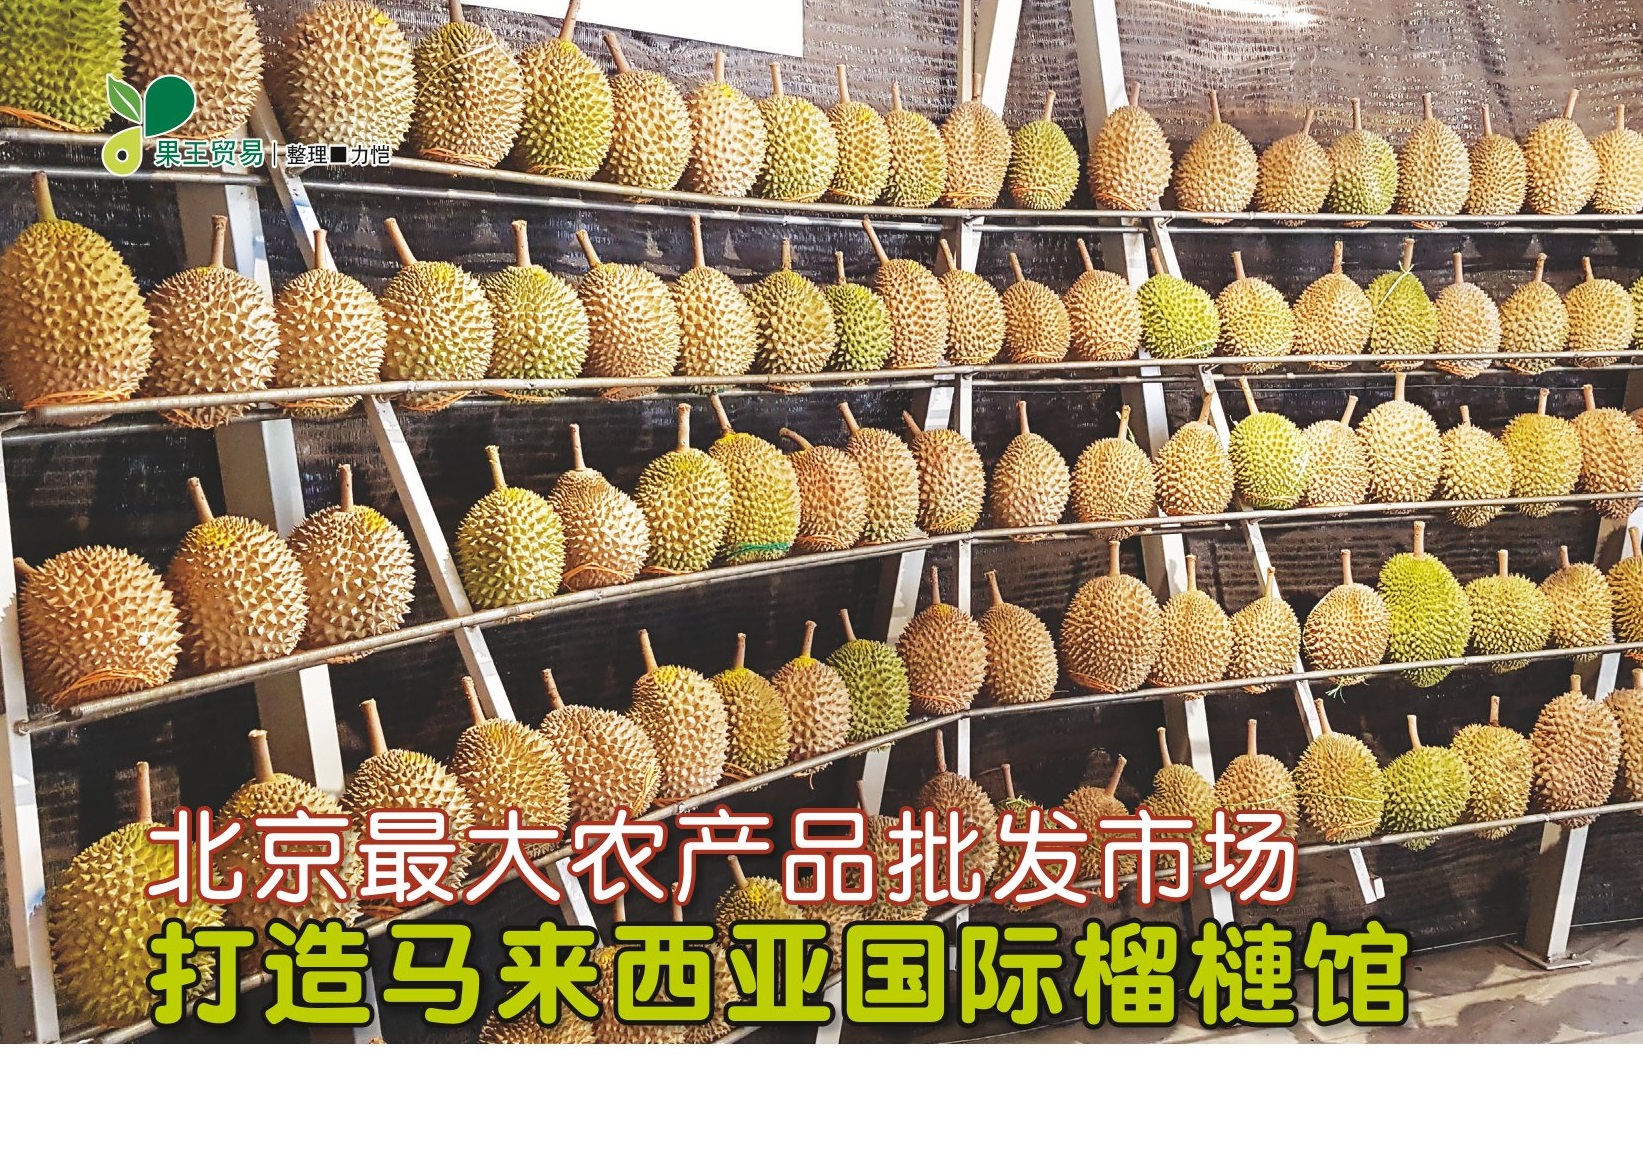 北京最大农产品批发市场 打造马来西亚国际榴梿馆 - 农牧世界